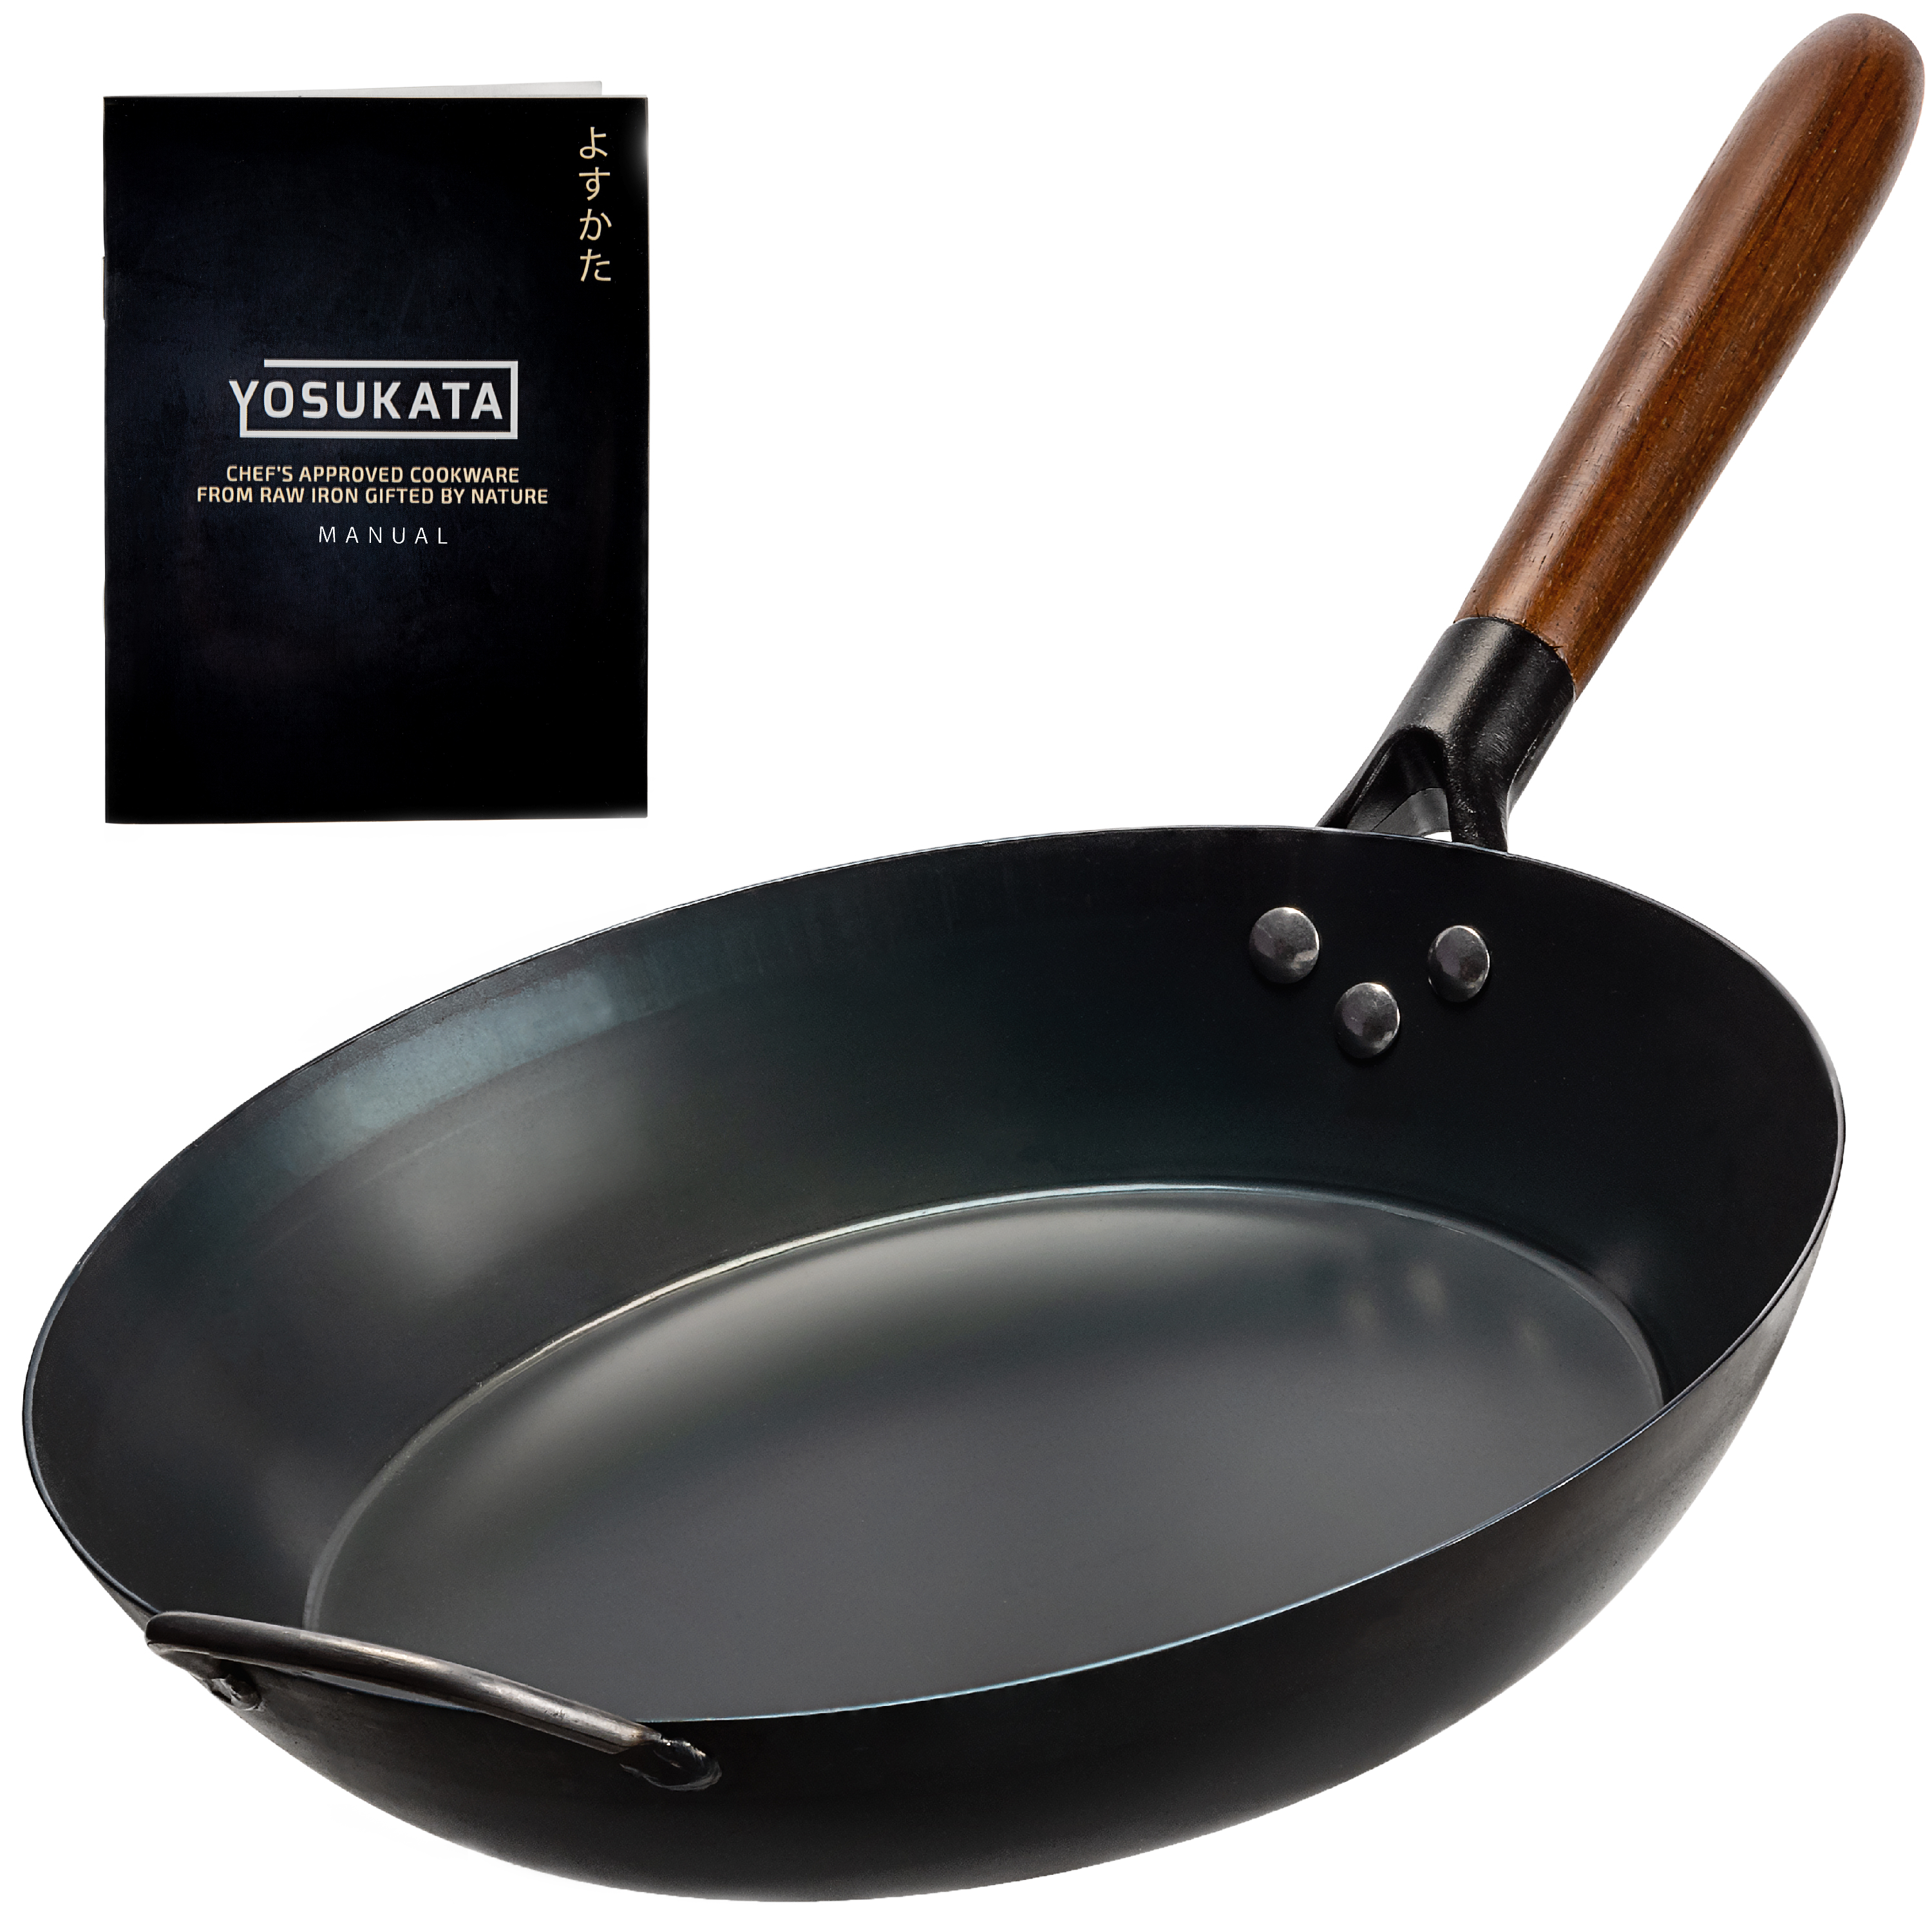 11,8-inch Pre-Seasoned Black Carbon Steel Skillet Pan